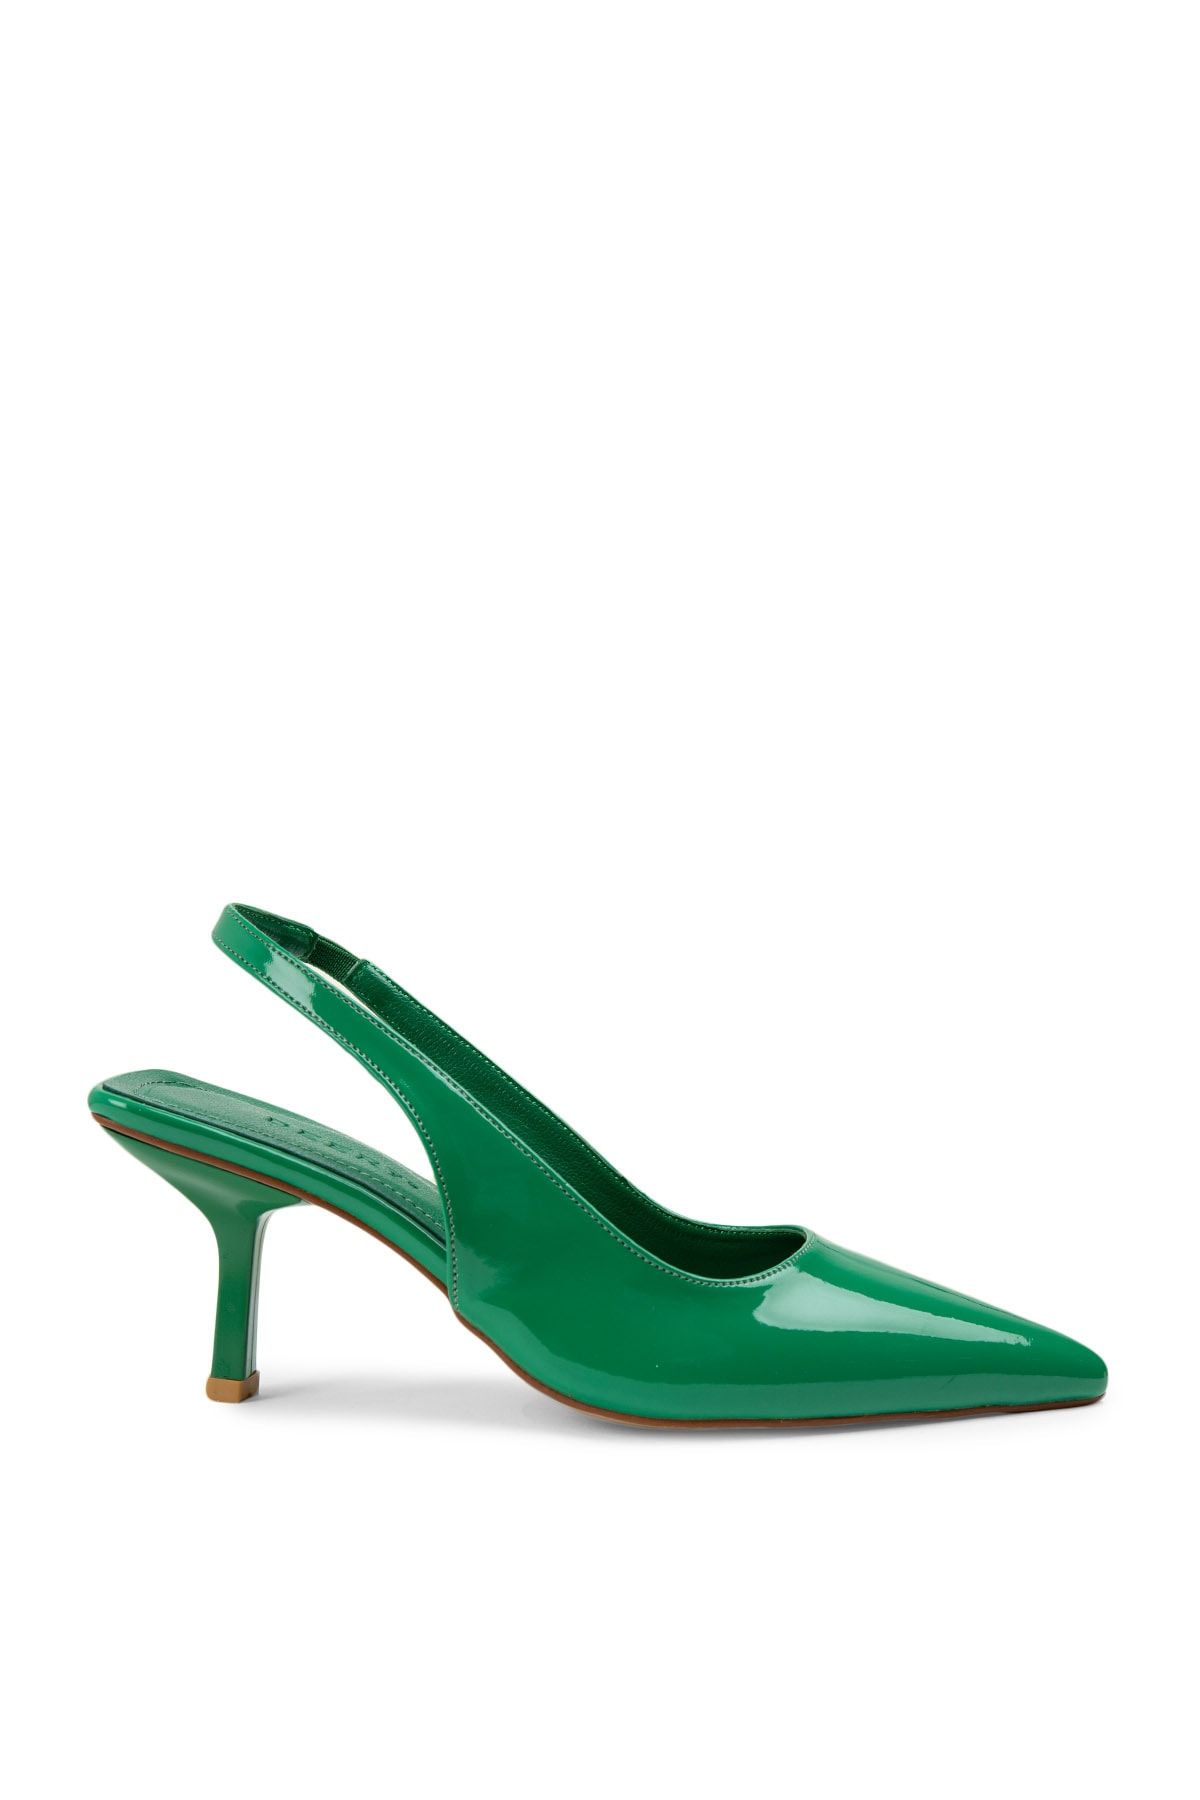 Deery Rugan Yeşil Topuklu Kadın Ayakkabı